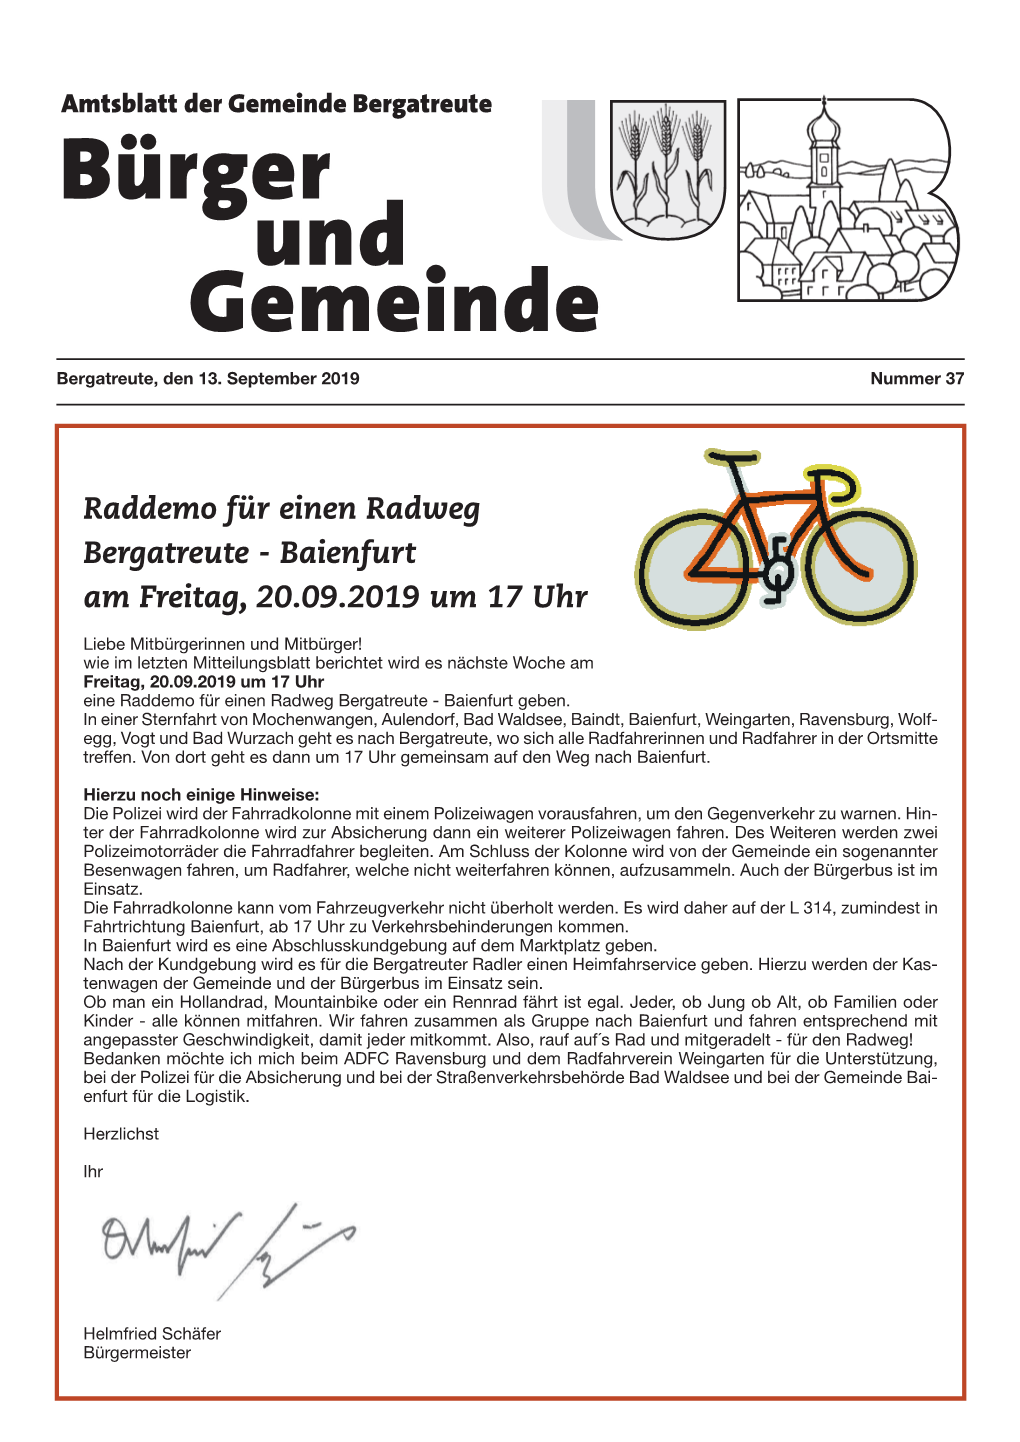 Raddemo Für Einen Radweg Bergatreute - Baienfurt Am Freitag, 20.09.2019 Um 17 Uhr